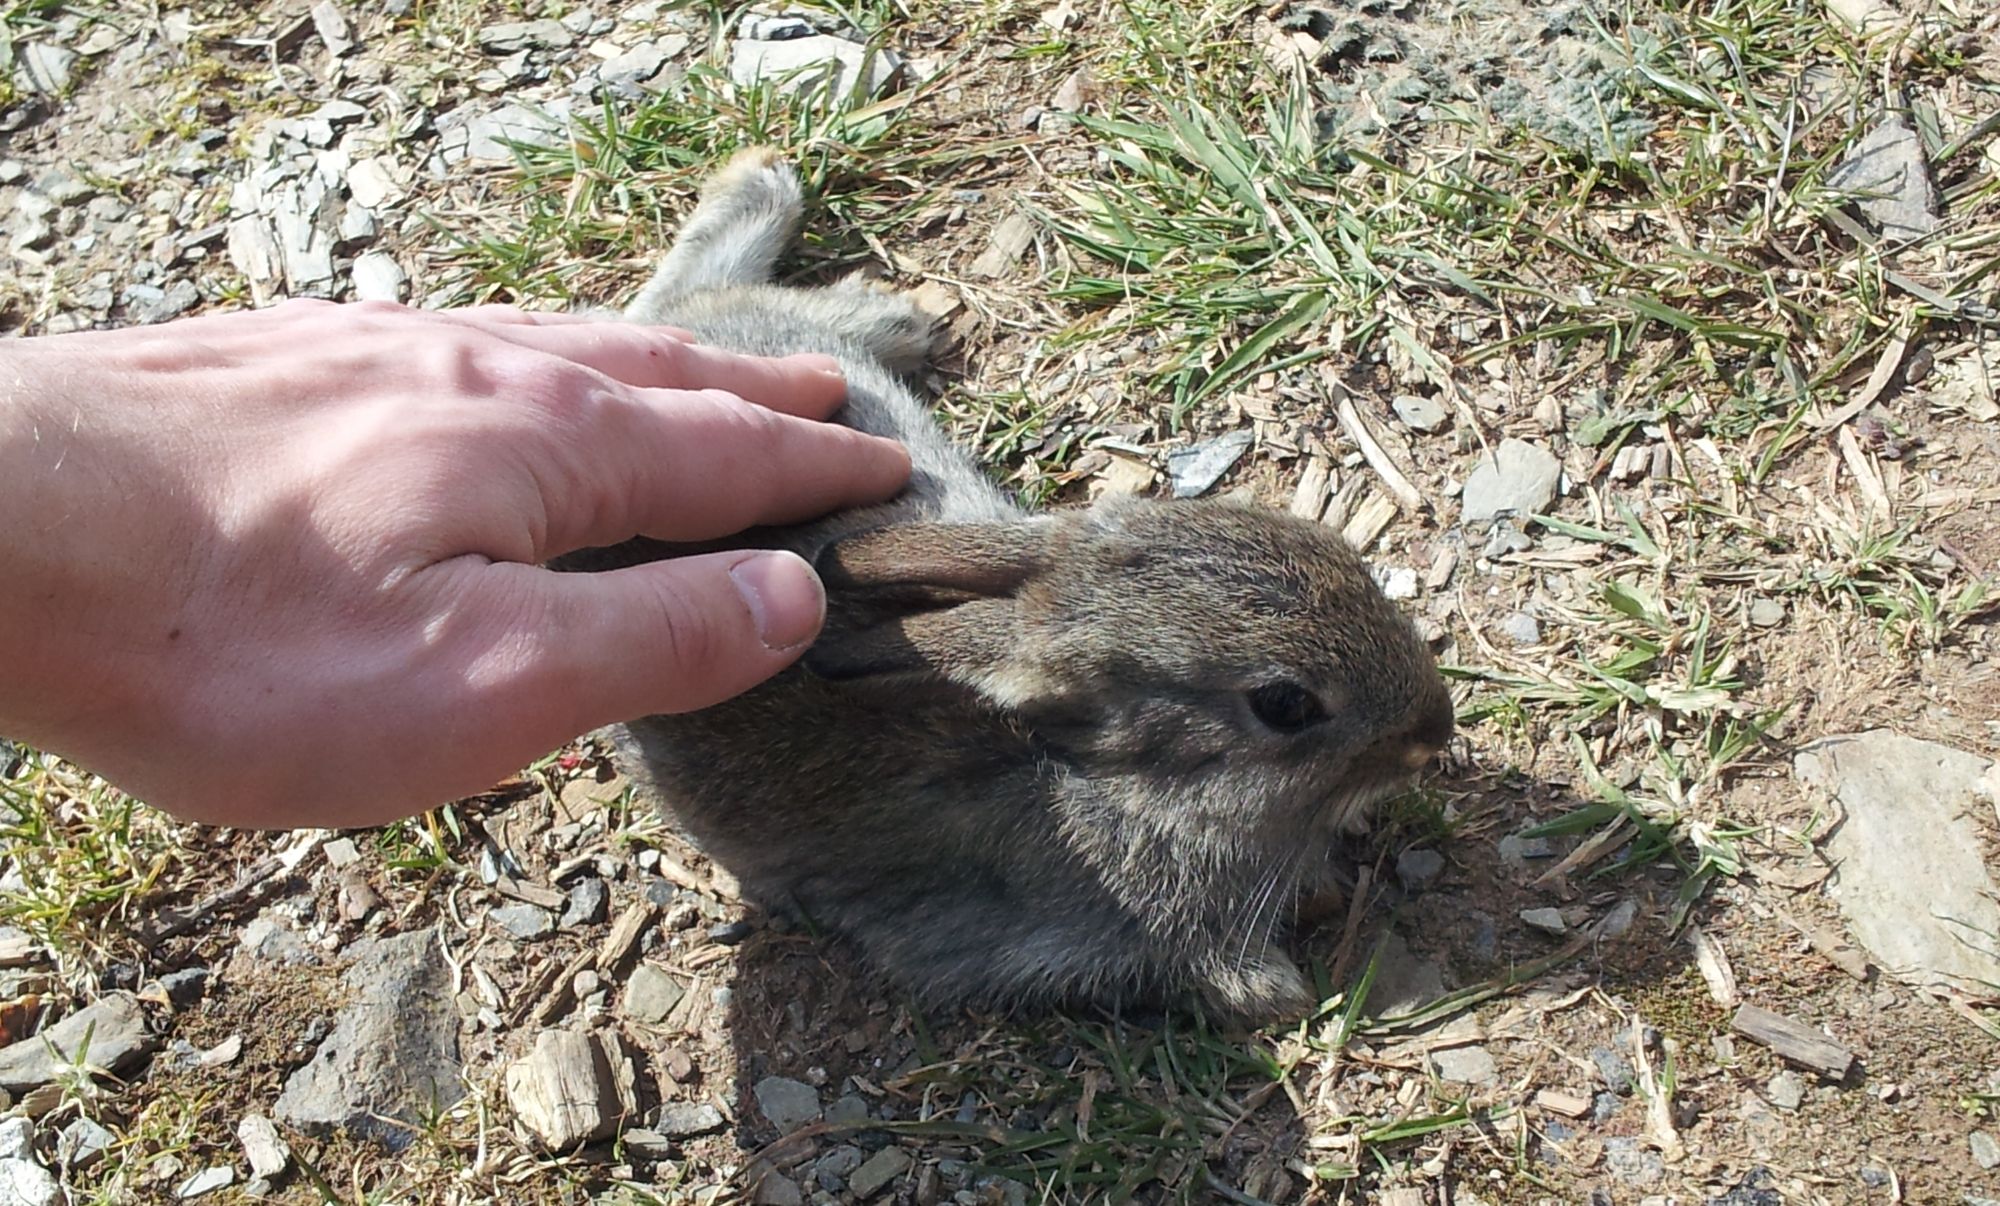 Josef stroking a wild baby rabbit